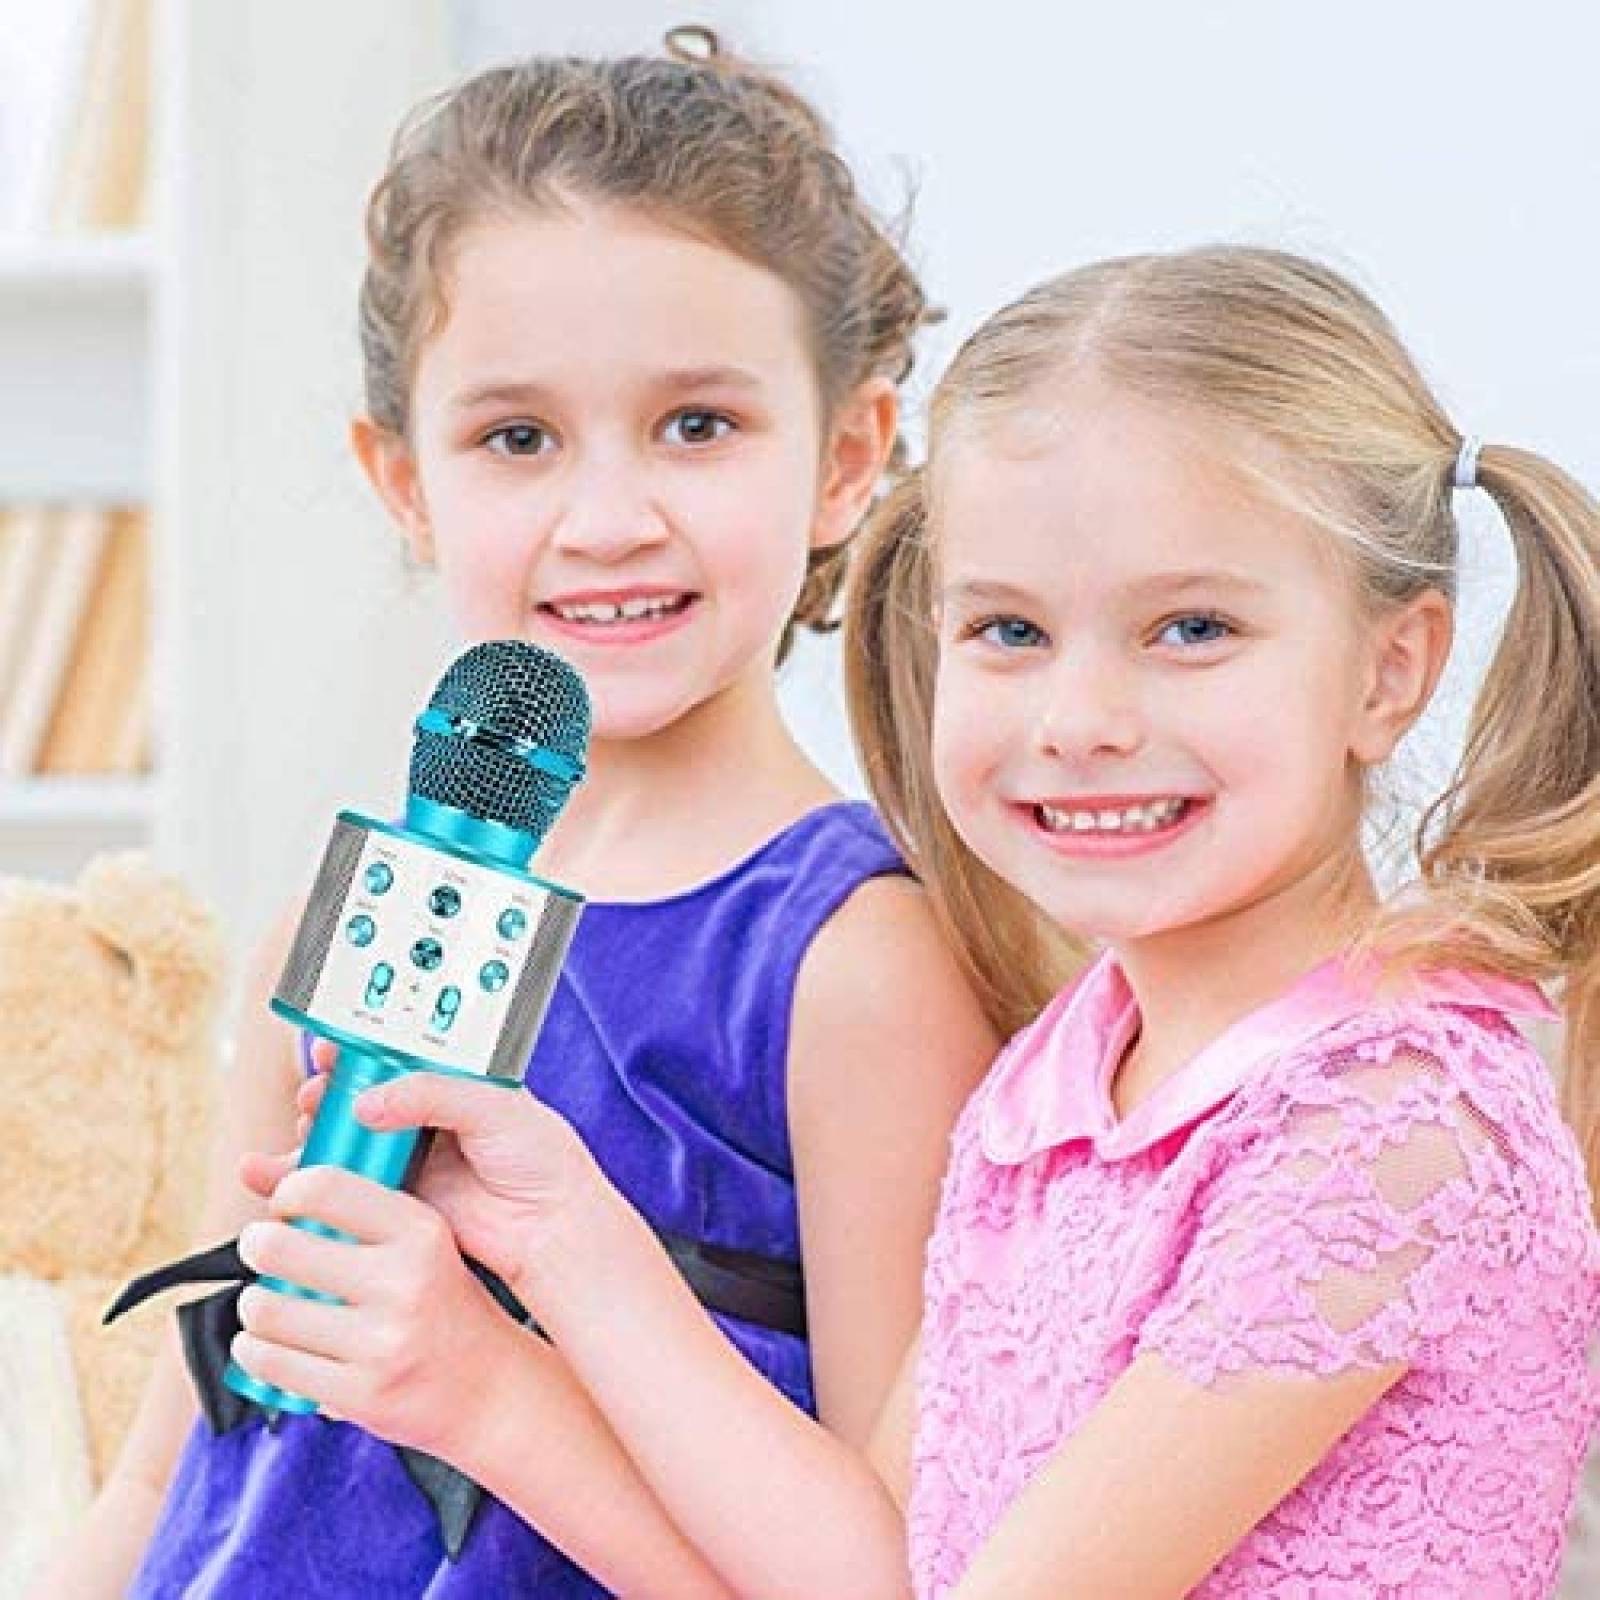 Micrófono para Niños Niskite 4-15 Años Karaoke -Azul